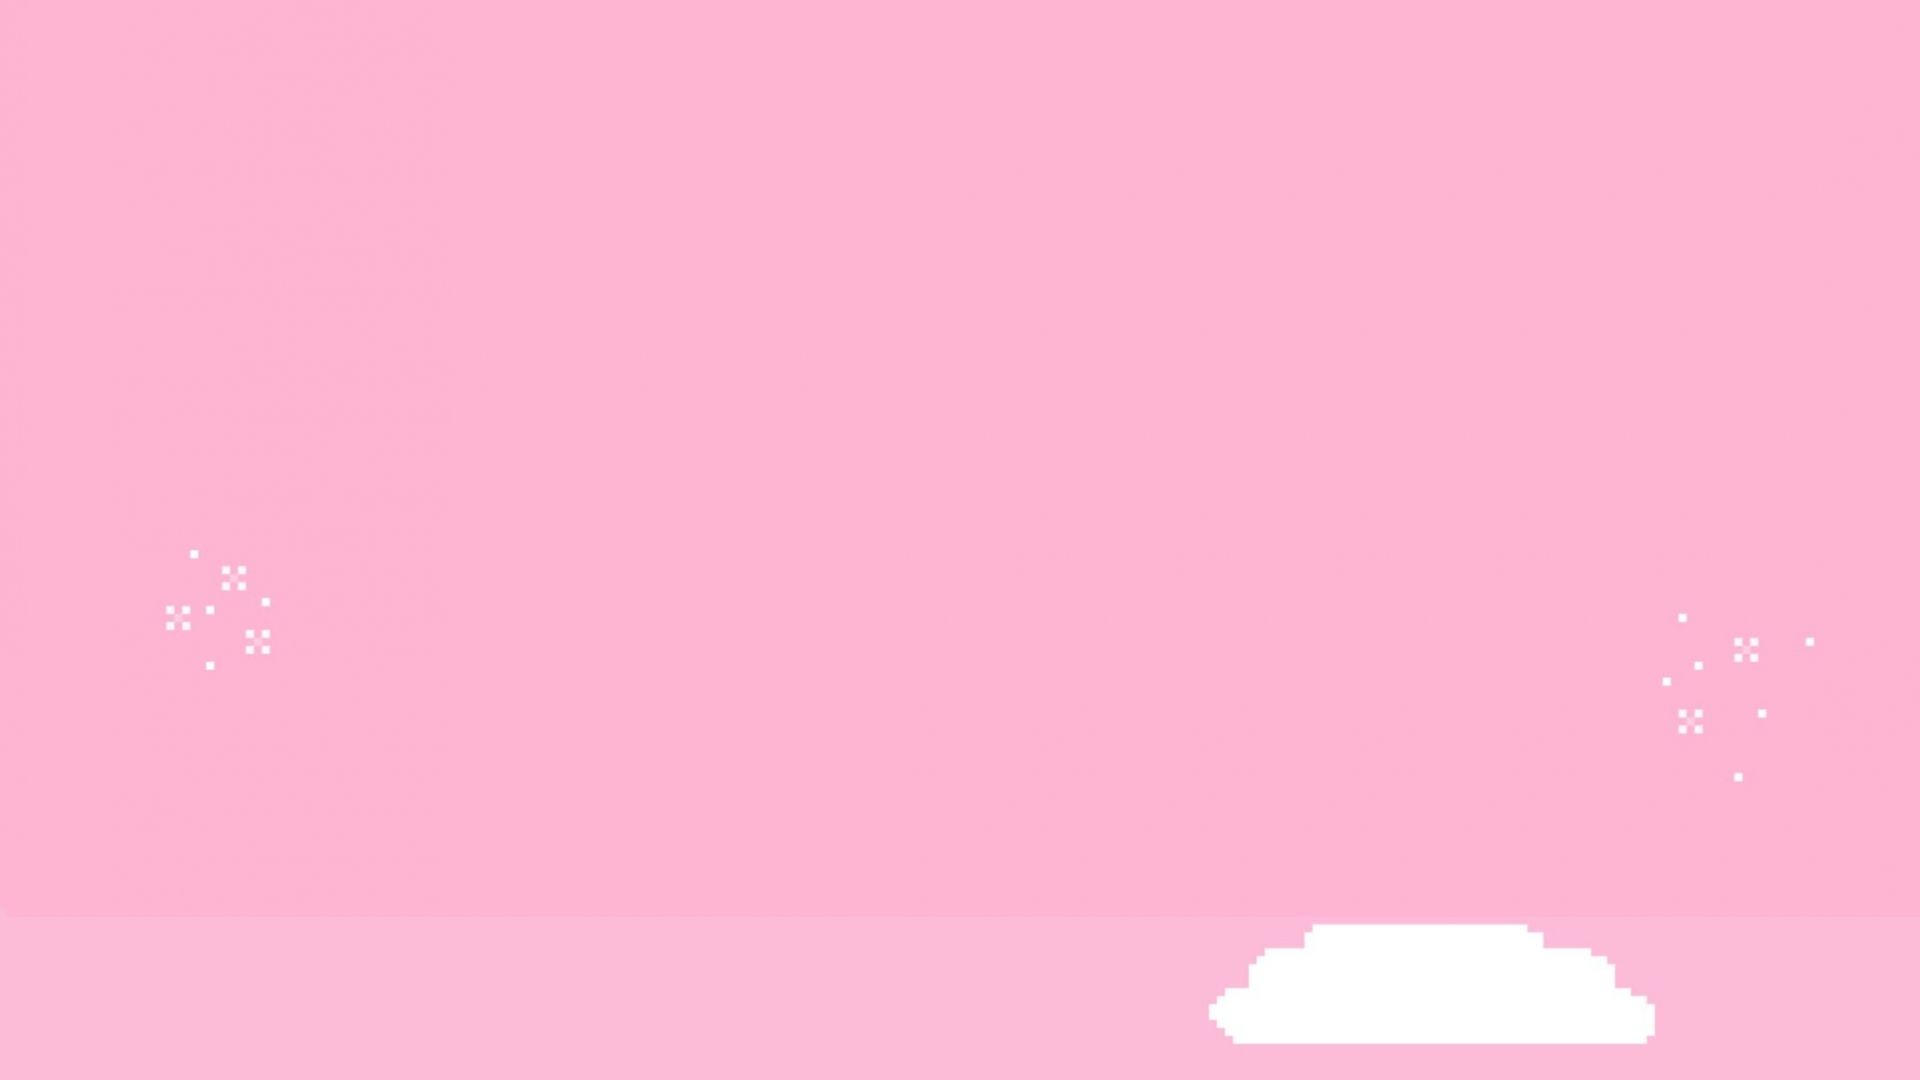 Những hình nền màu hồng đầy cá tính và công nghệ HD sẽ khiến cho người dùng đắm chìm trong không gian làm việc của mình. Hãy cùng chiêm ngưỡng những hình nền độc đáo và đẹp nhất trong thể loại cute pink aesthetic wallpaper này nhé!